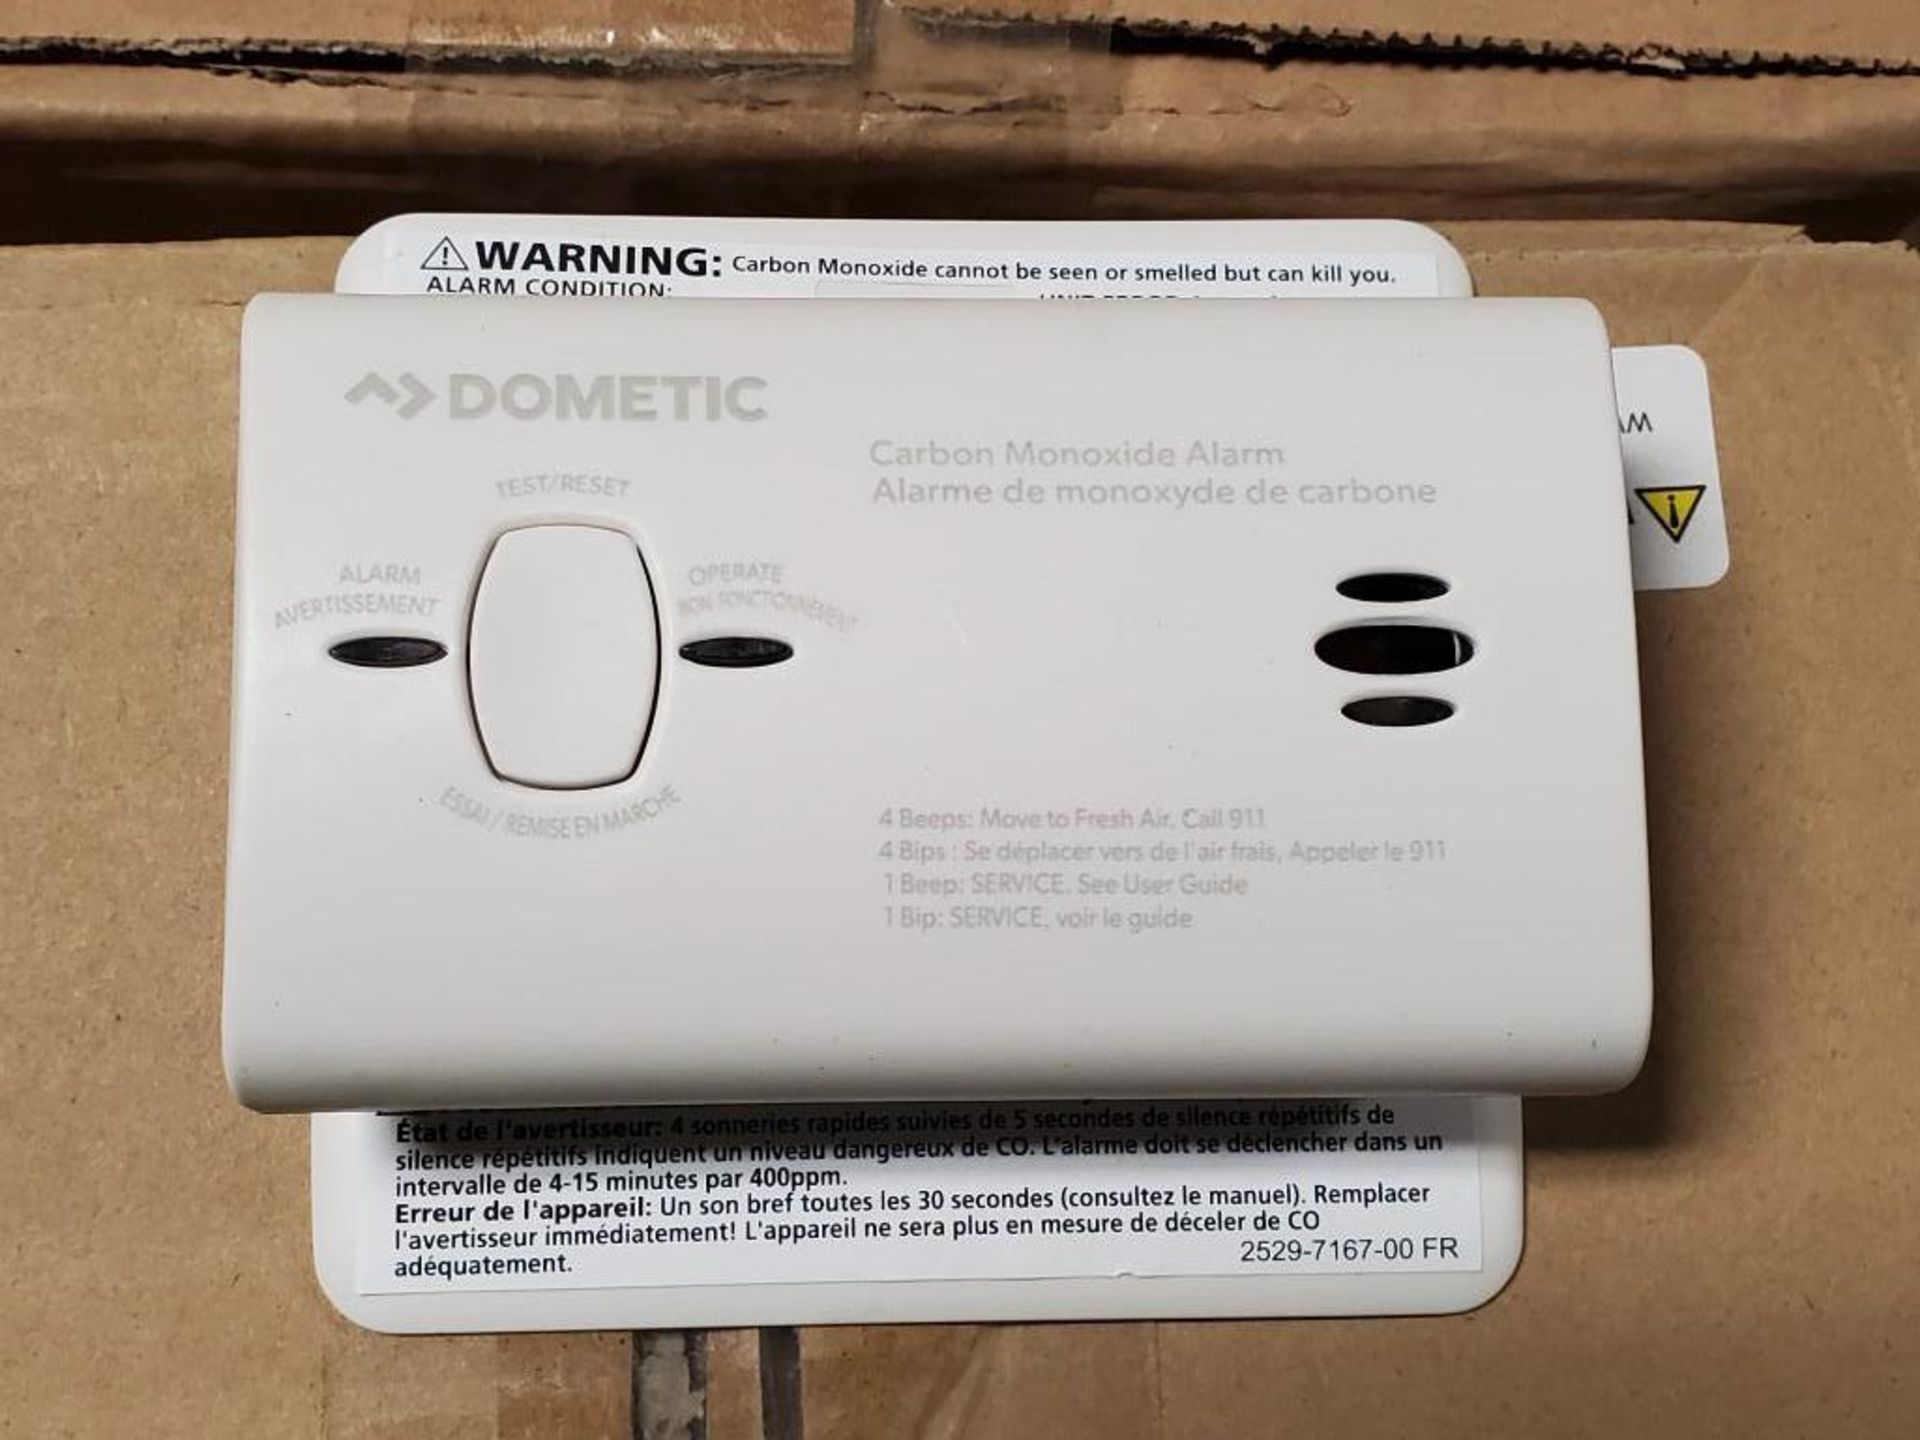 Qty 72 - Dometic Carbon Monoxide detector. Model CO-900-0143-LPM. New in bulk box. 2 boxes of 36 uni